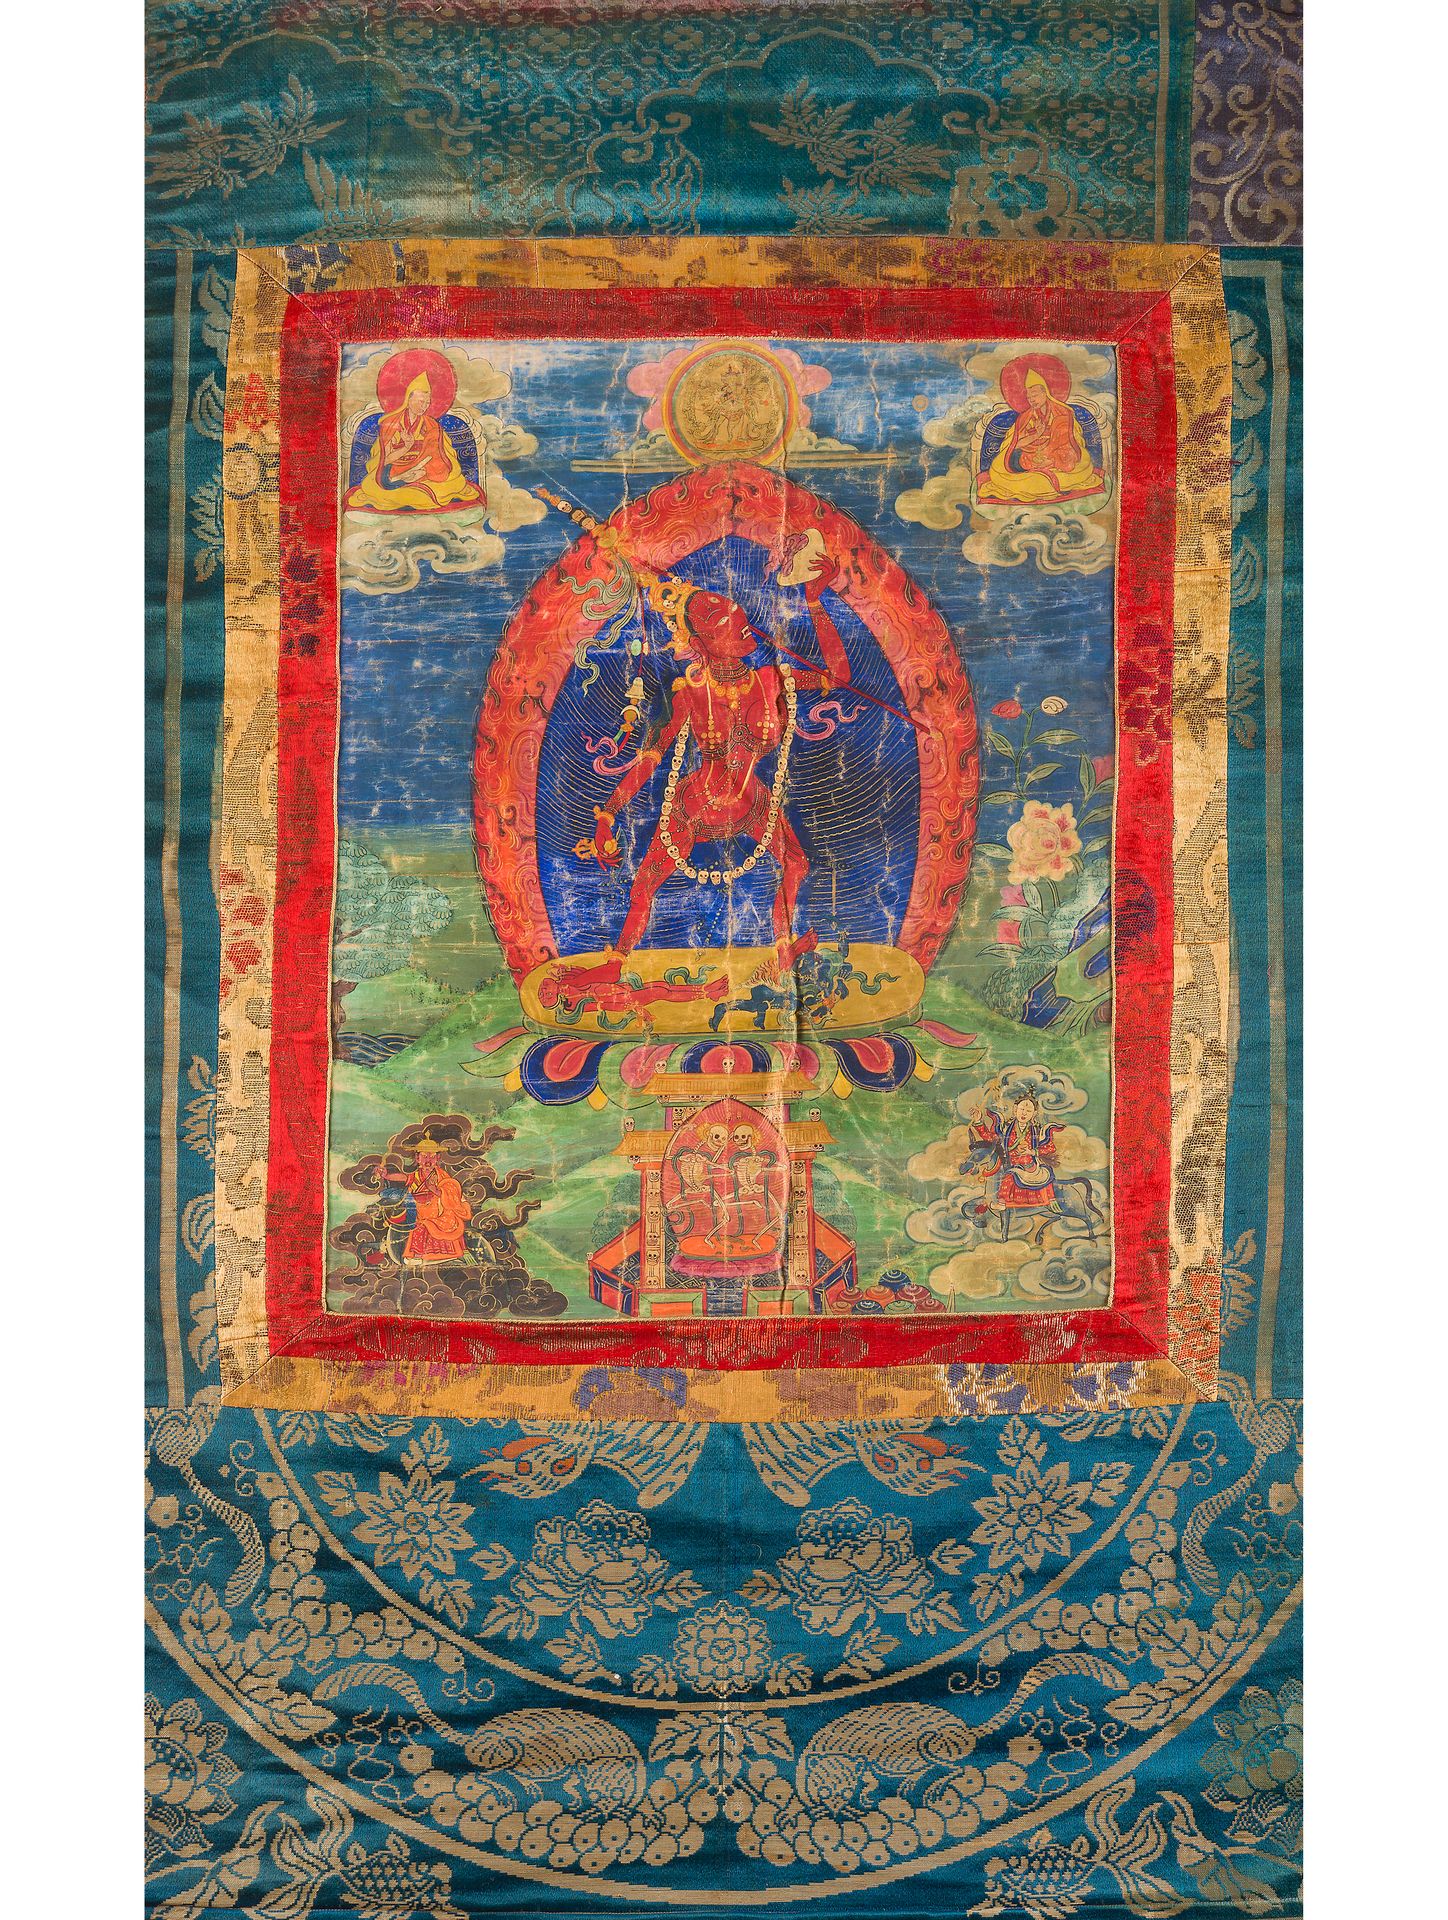 Null Ein Thangka, der Vajrayogini darstellt.

Tibet, 19. Jahrhundert

Stoff, Pig&hellip;